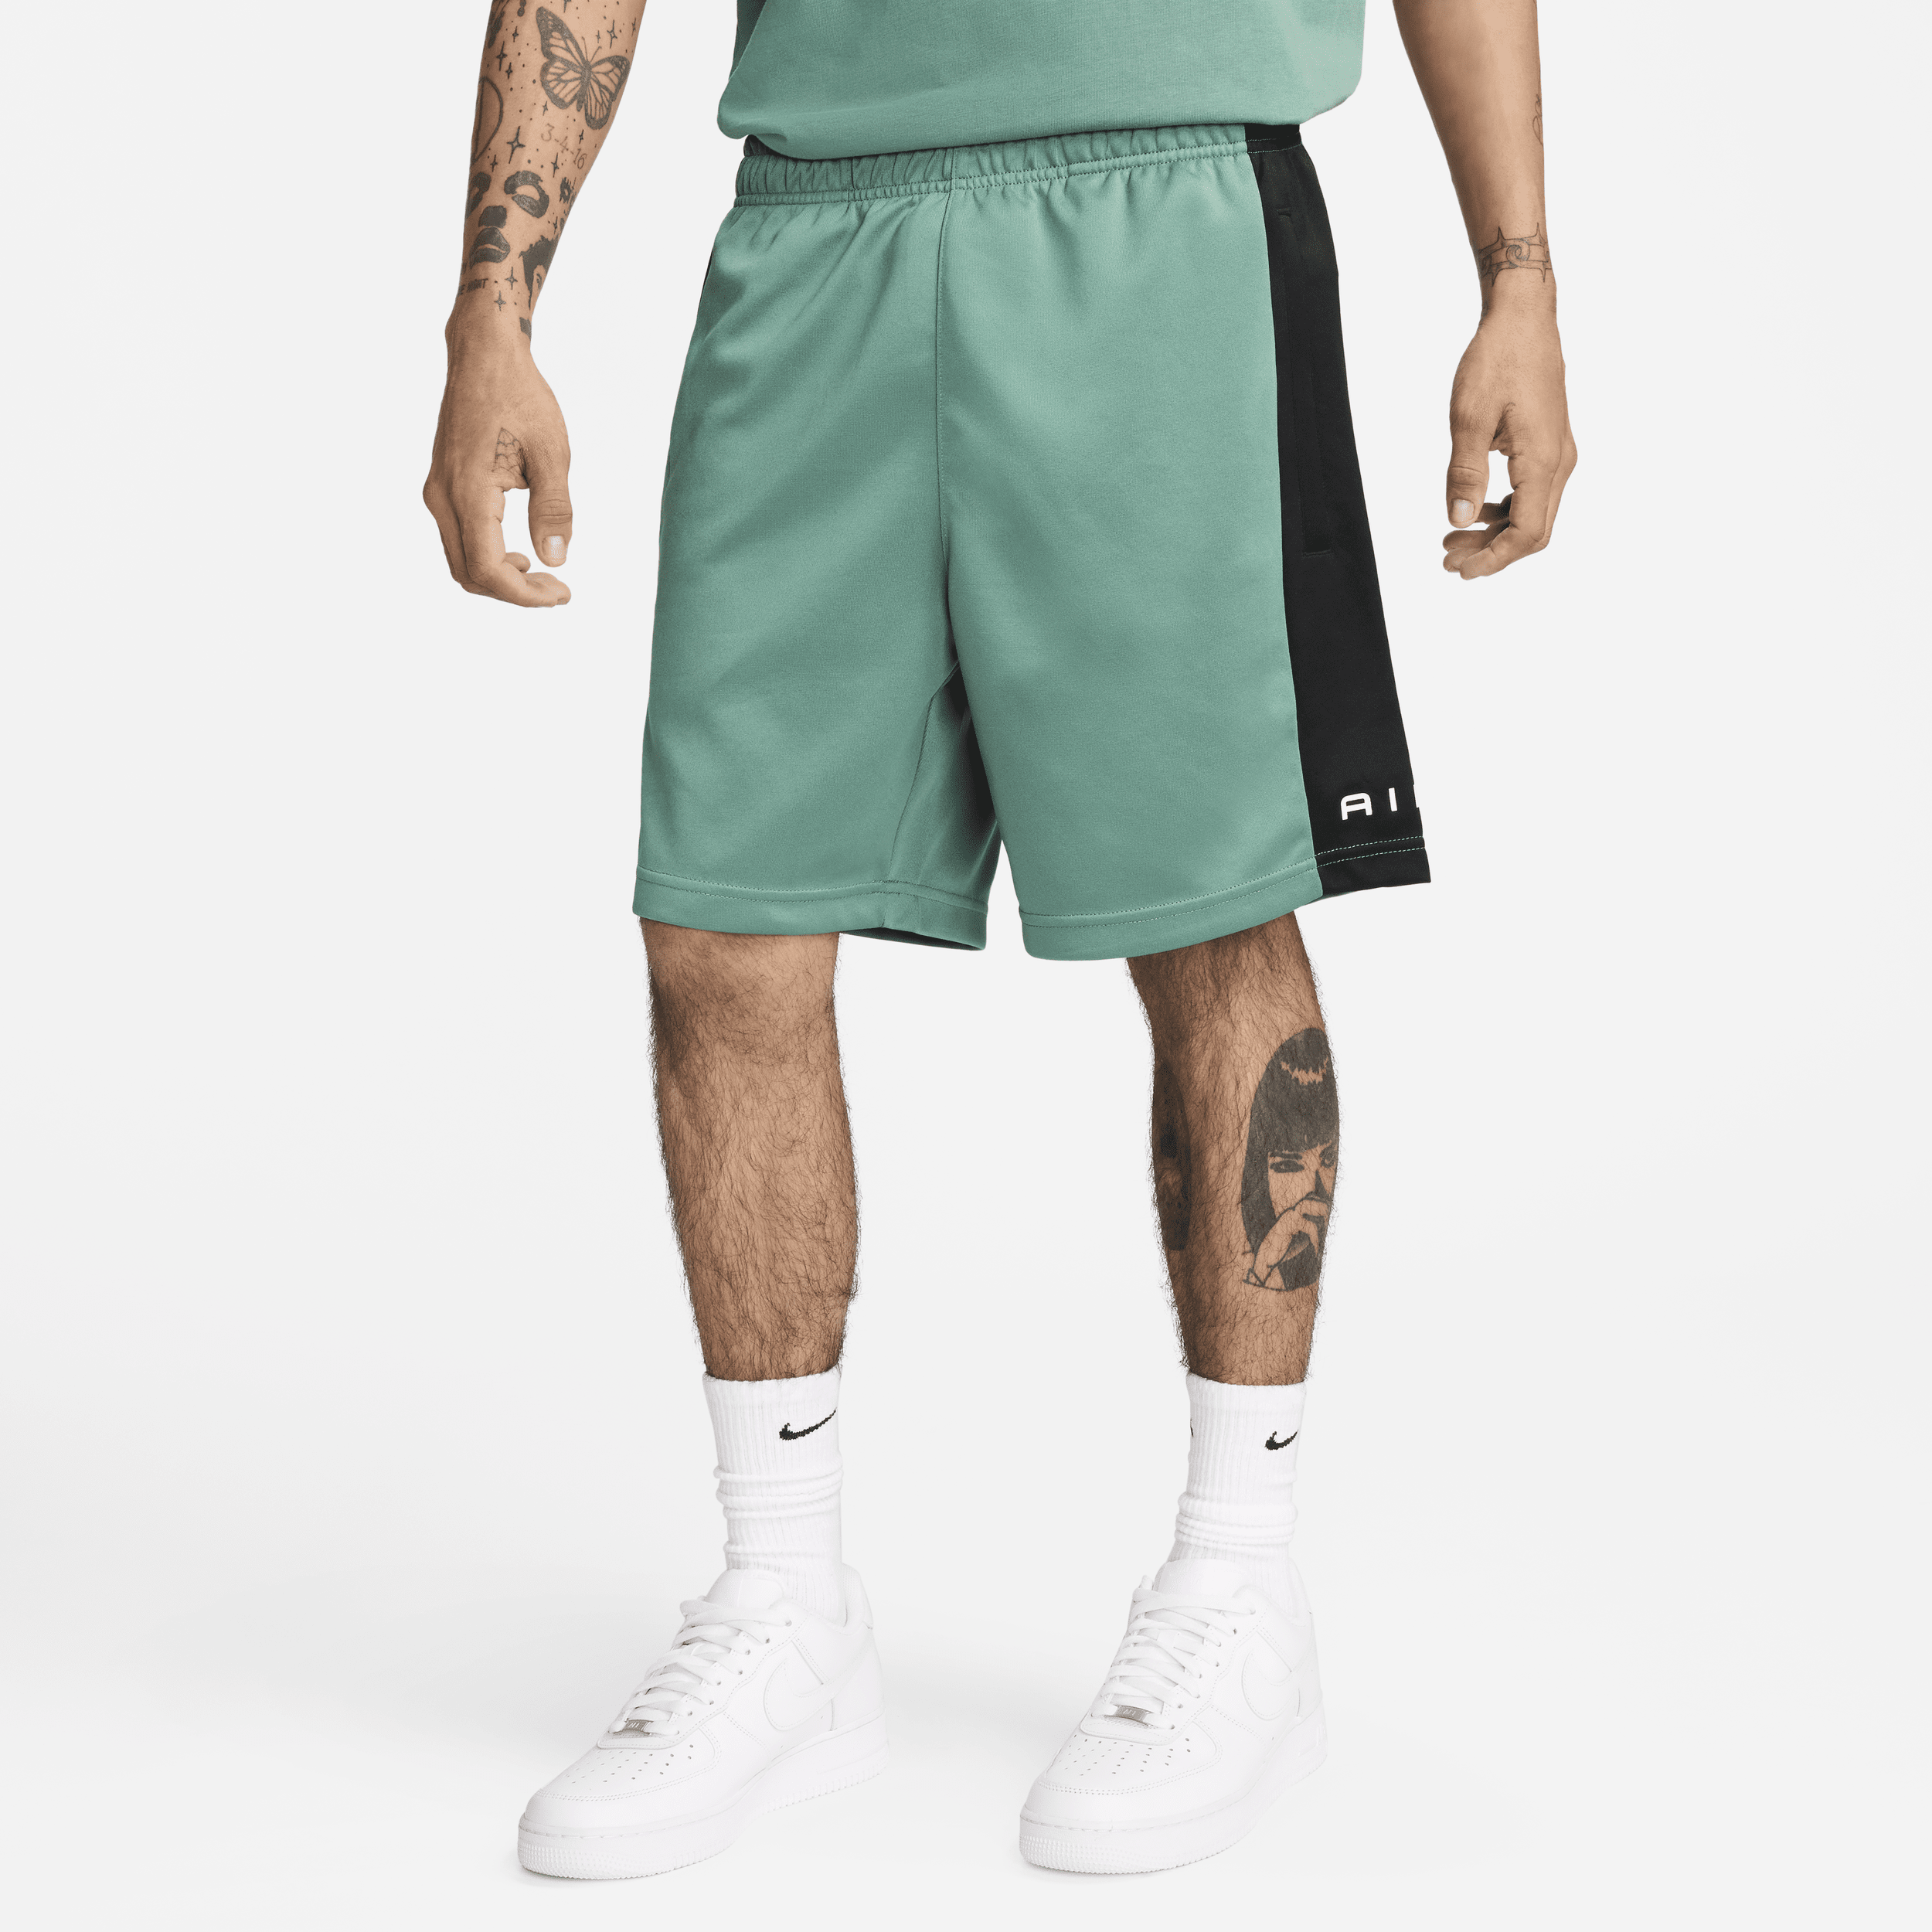 Nike Air Pantalón corto - Hombre - Verde